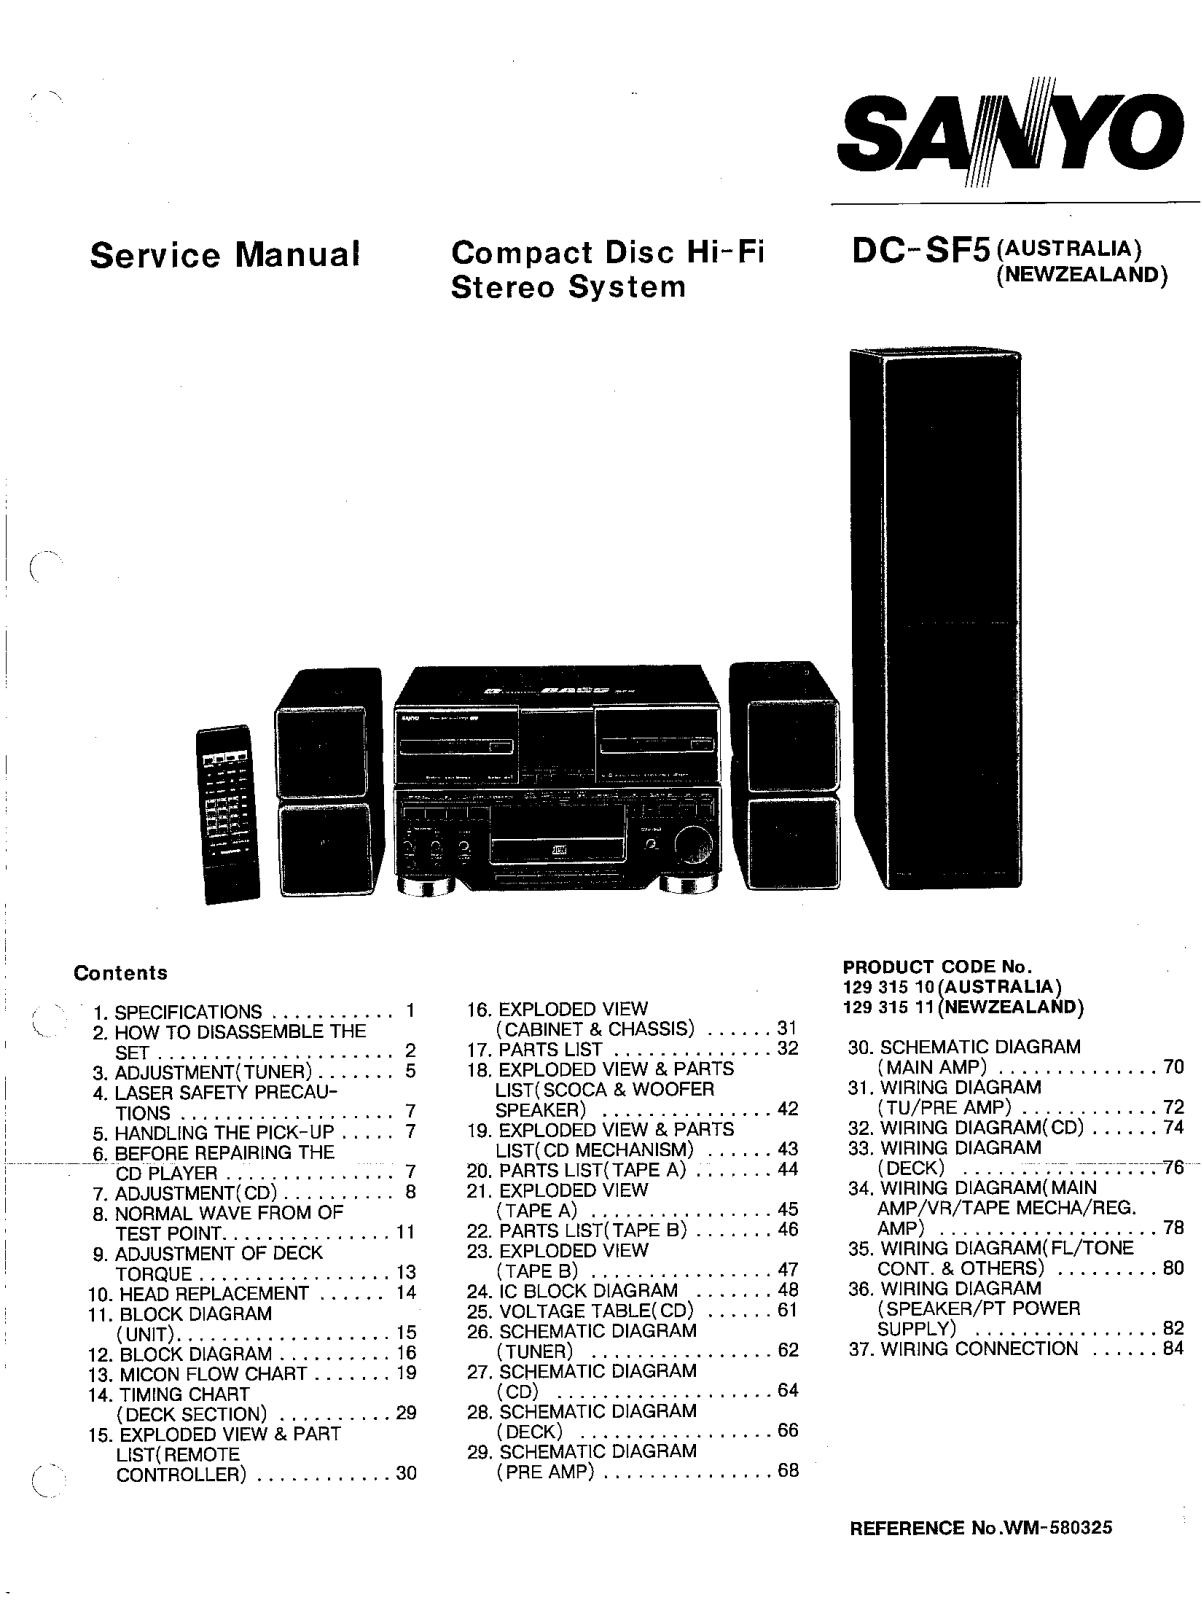 Sanyo DCS-F-5 Service manual